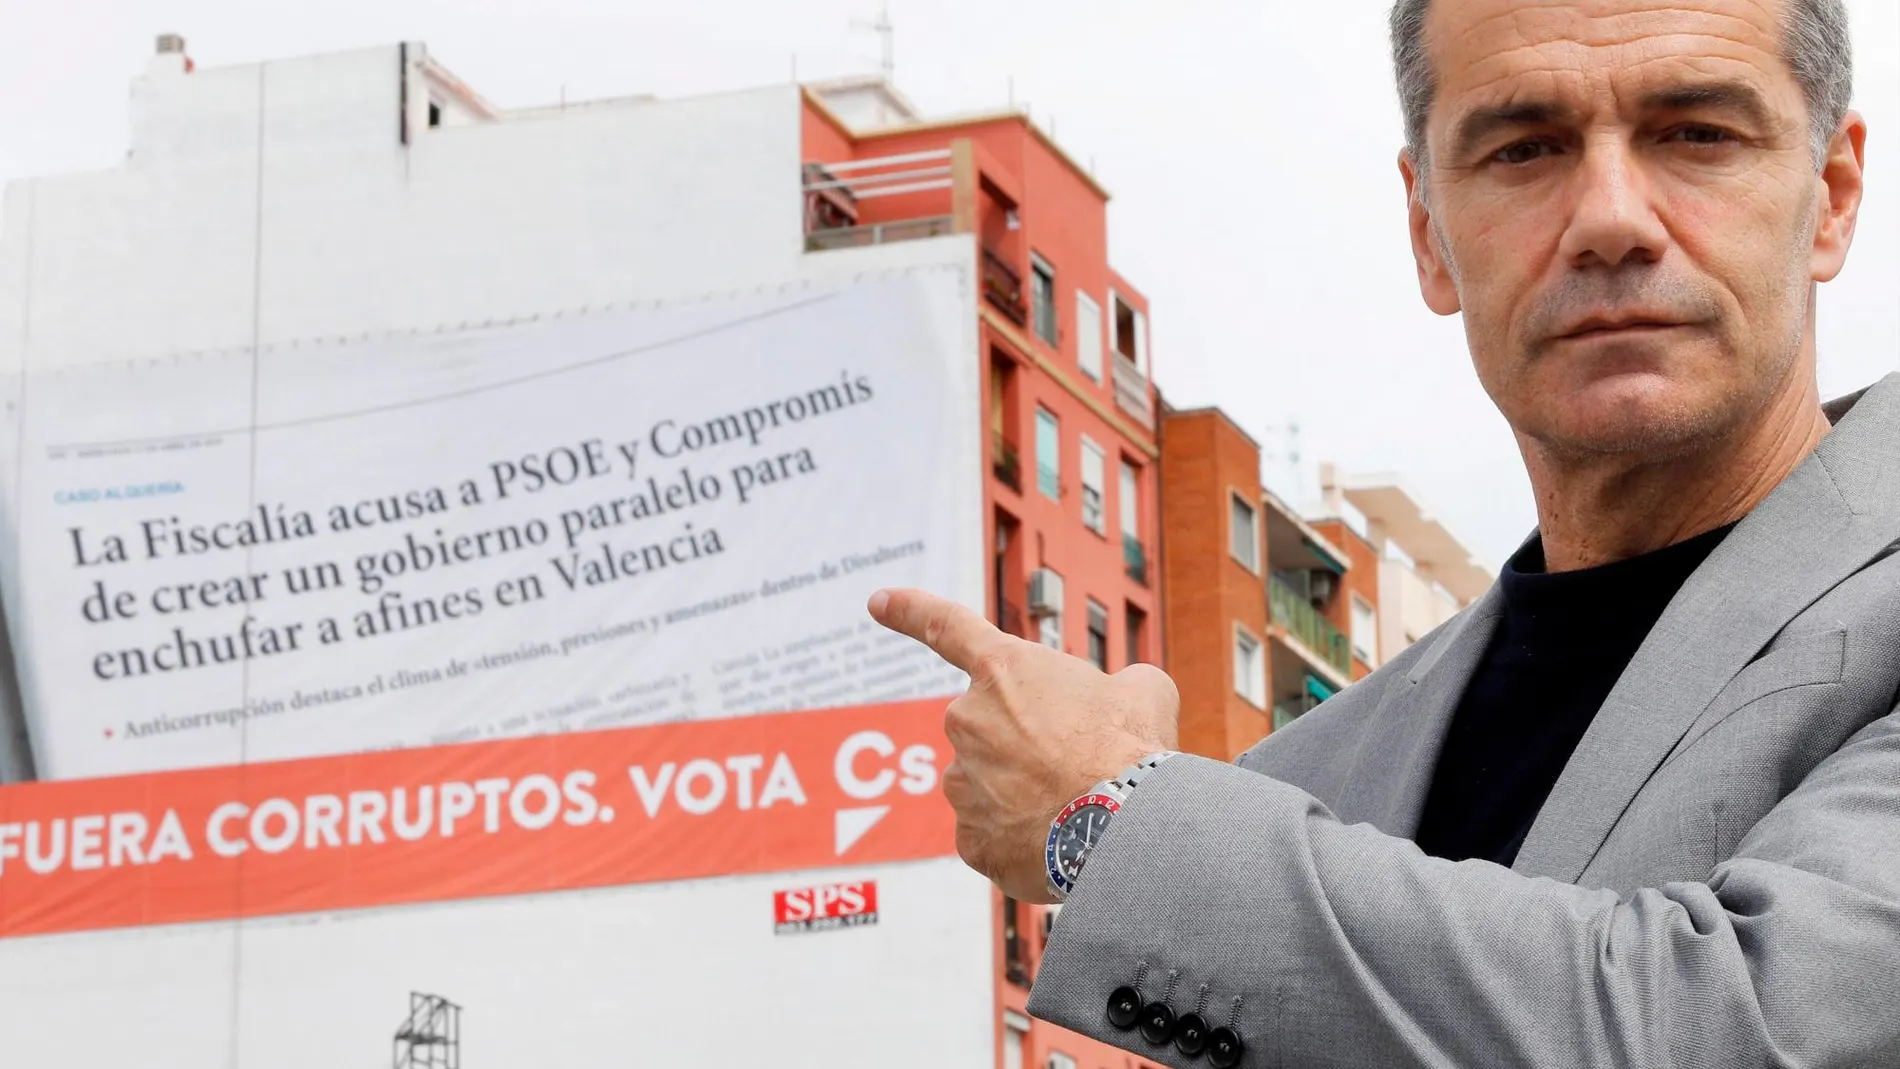 El candidato de Ciudadanos a la Generalitat, Toni Cantó, ayer ante el cartel que colgó la formación para denunciar la corrupción